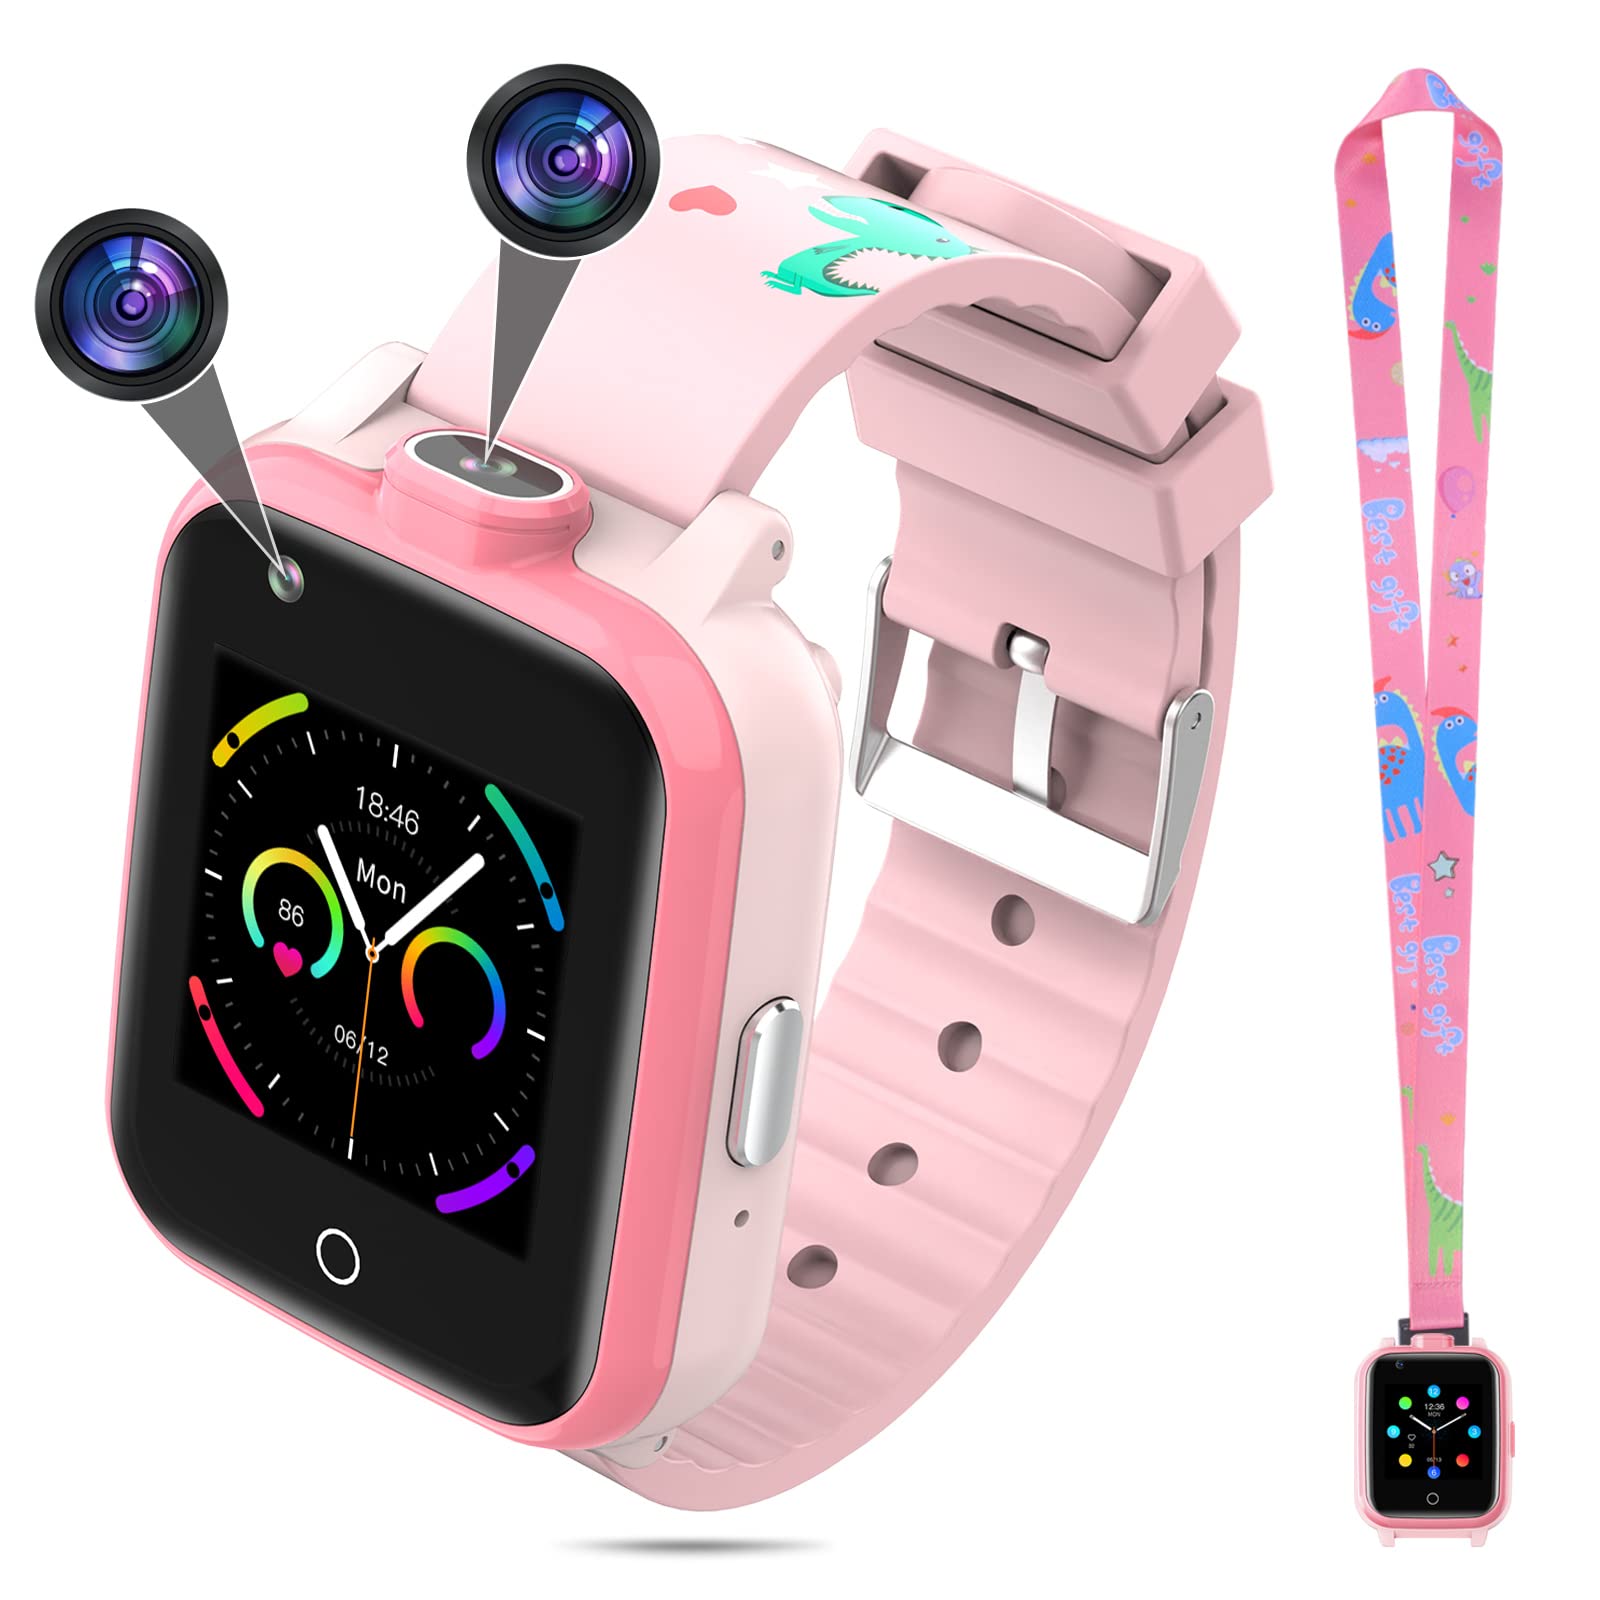 TOPCHANCES 4G Smartwatch für Kinder Smart Watch kinderuhr mit GPS WiFi LBS Tracker,2 Kamera,SOS,Wecker, Jungen Mädchen Smartphone für Kids 3-12 Jahre (Rosa)